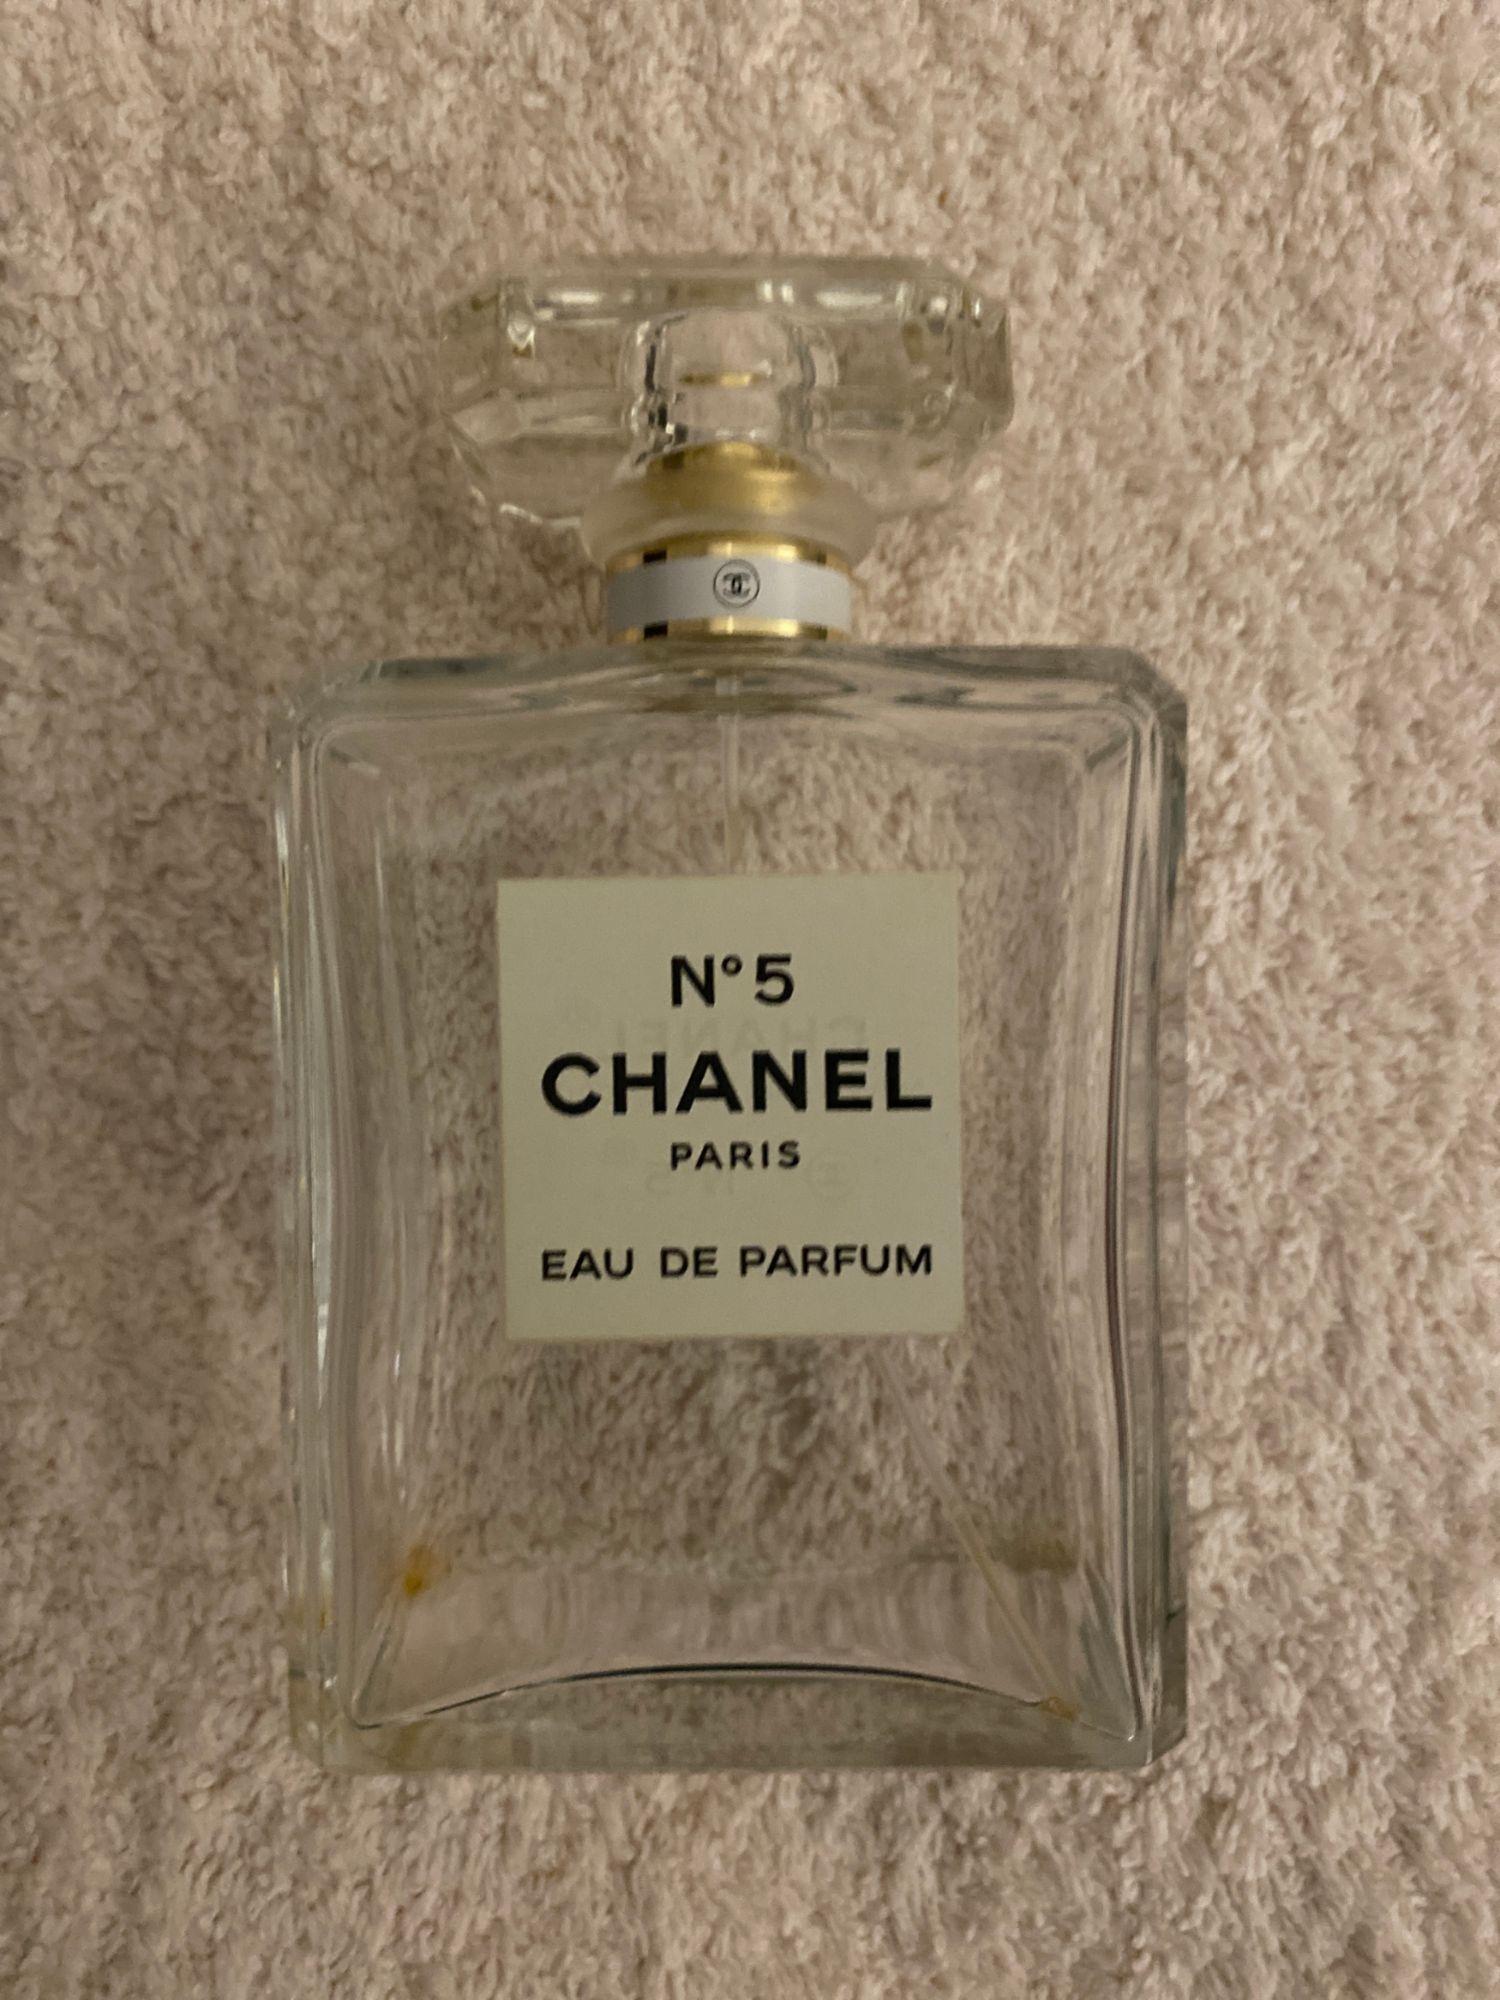 Flacon vide Chanel n5 eau de parfum - Objets à collectionner